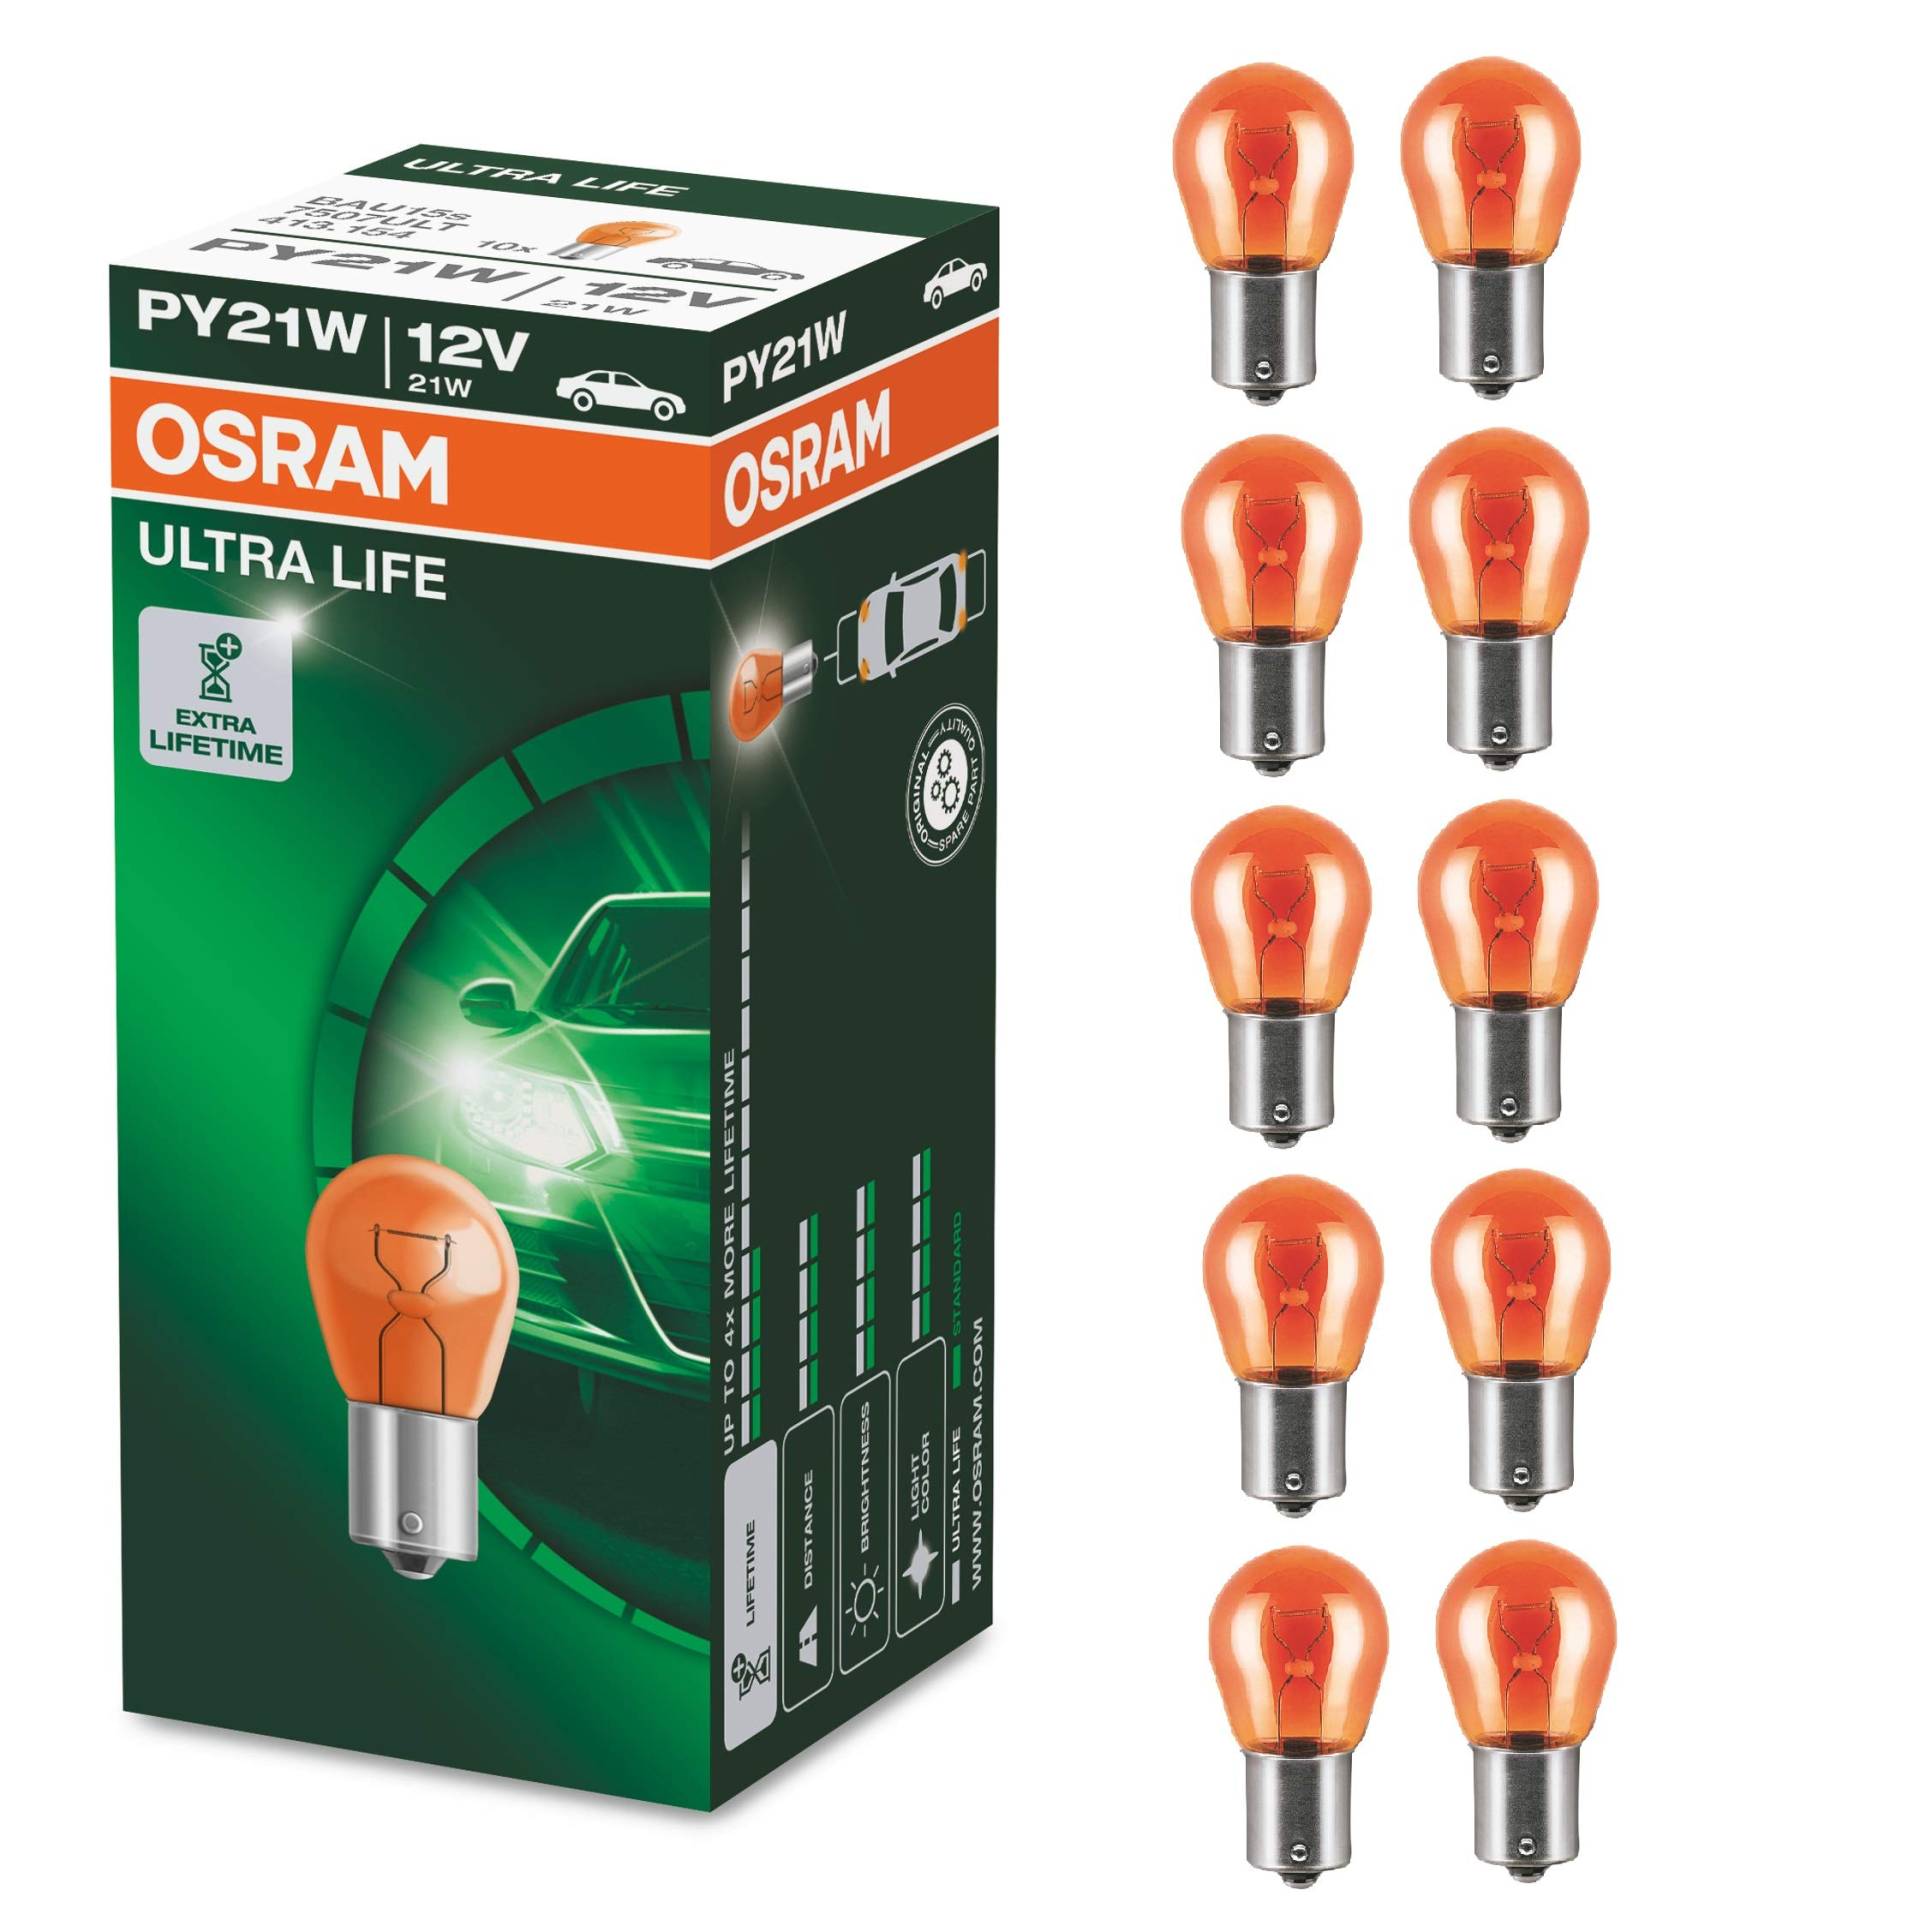 Osram ULTRA LIFE PY21W Halogen-Signallampe, Blinklicht, 7507ULT, 12V PKW, Faltschachtel (10 Stück) von Osram